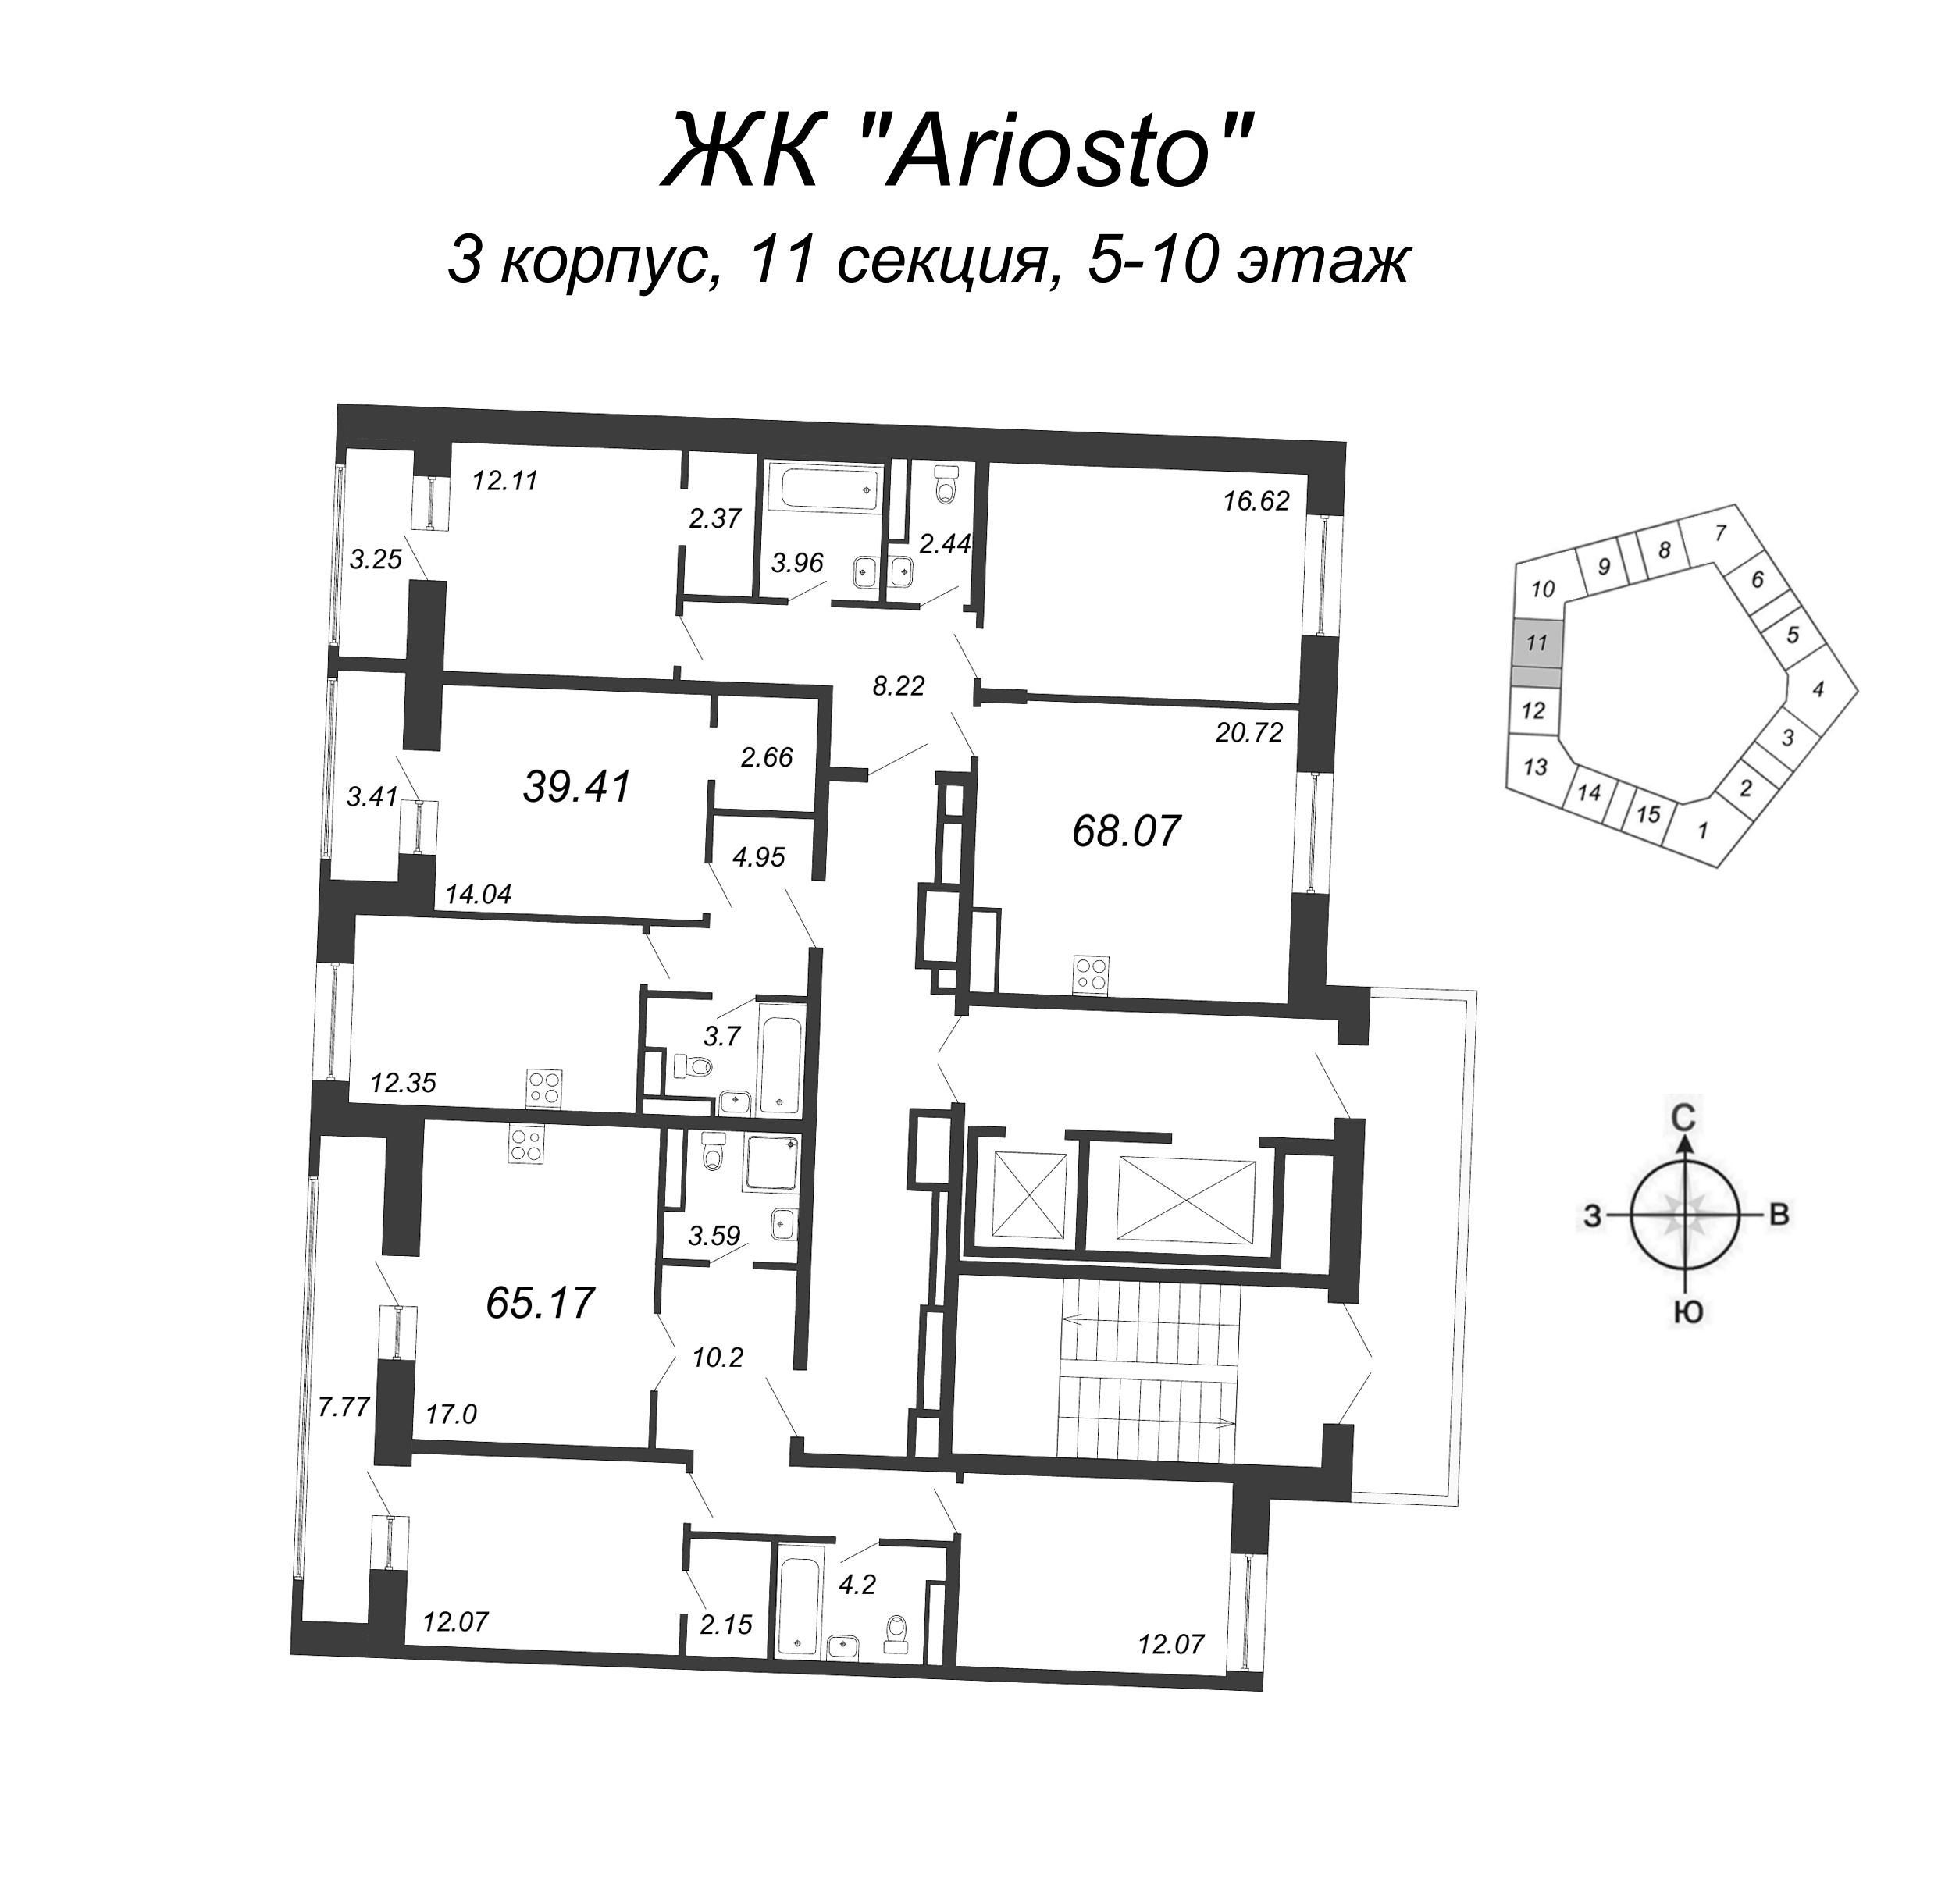 3-комнатная (Евро) квартира, 68.07 м² в ЖК "Ariosto" - планировка этажа